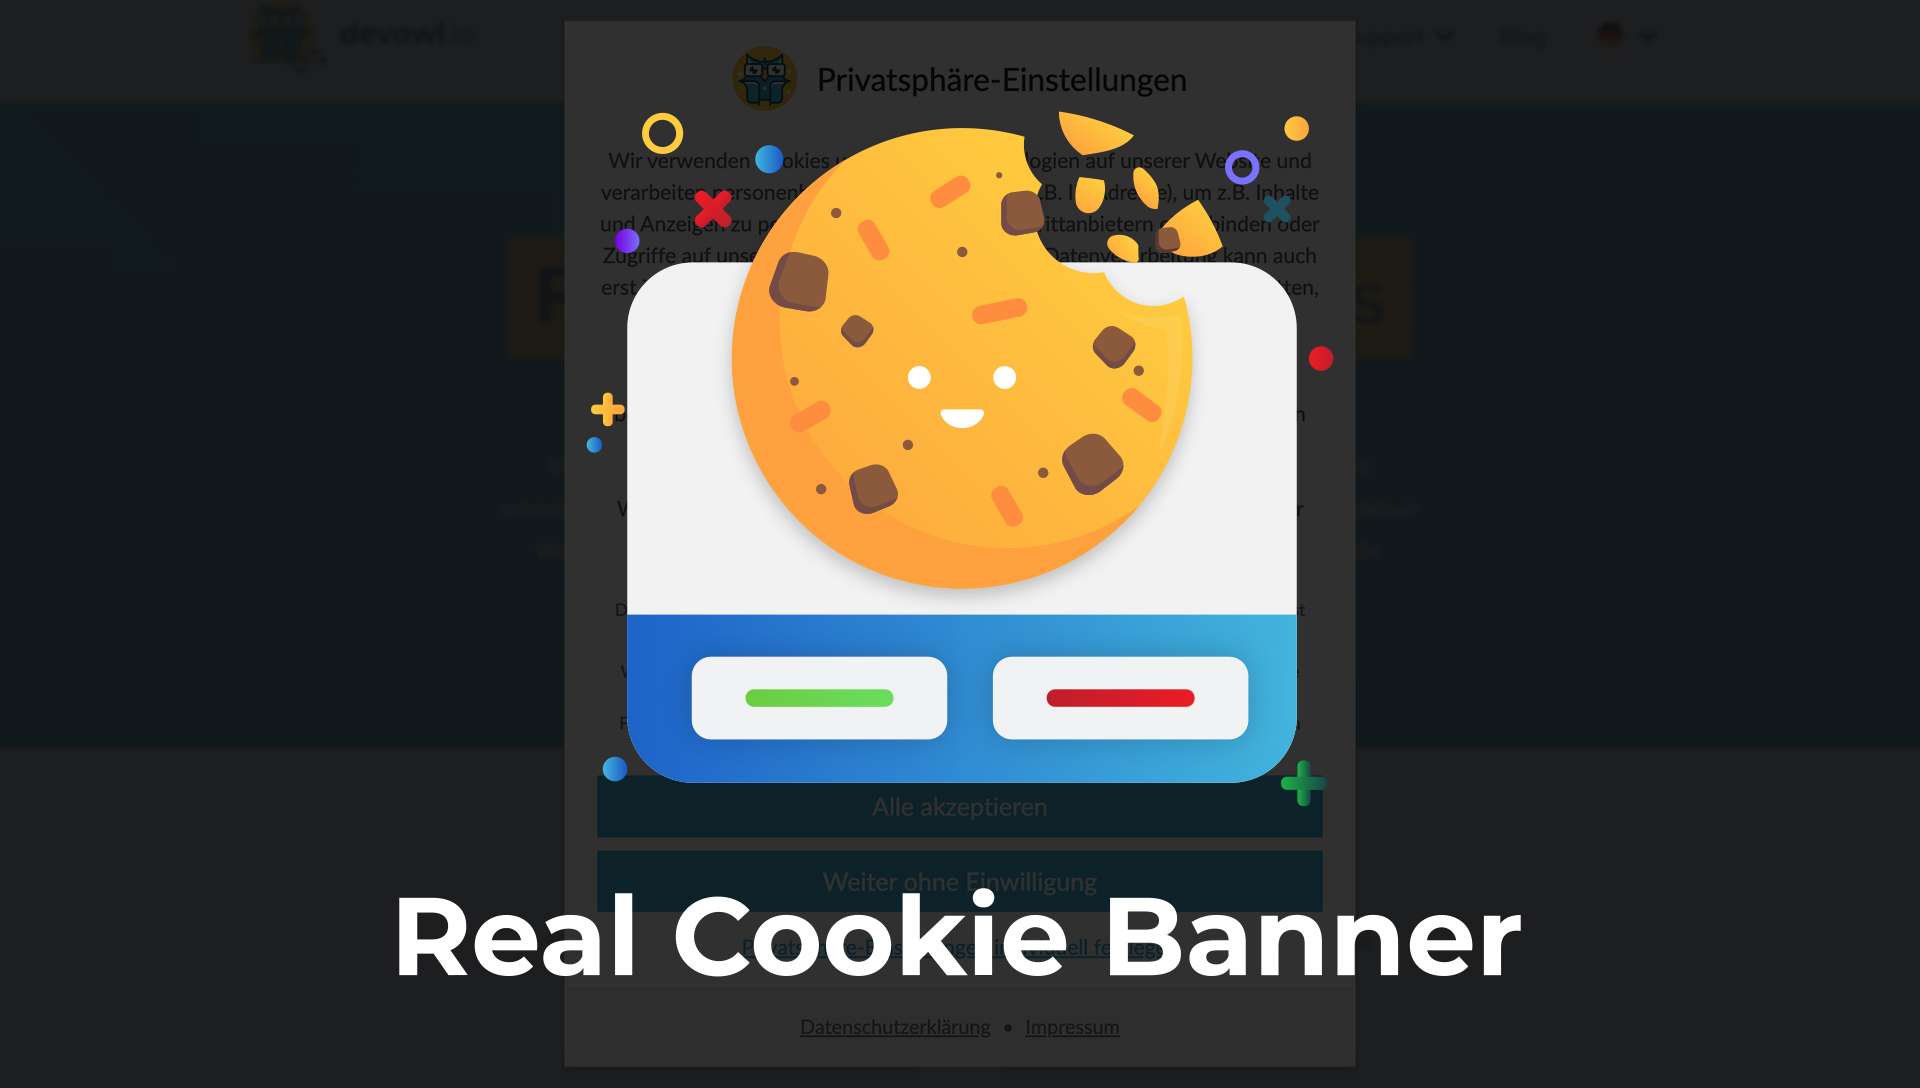 Wordpress Real Cookie Banner Overlay (de)